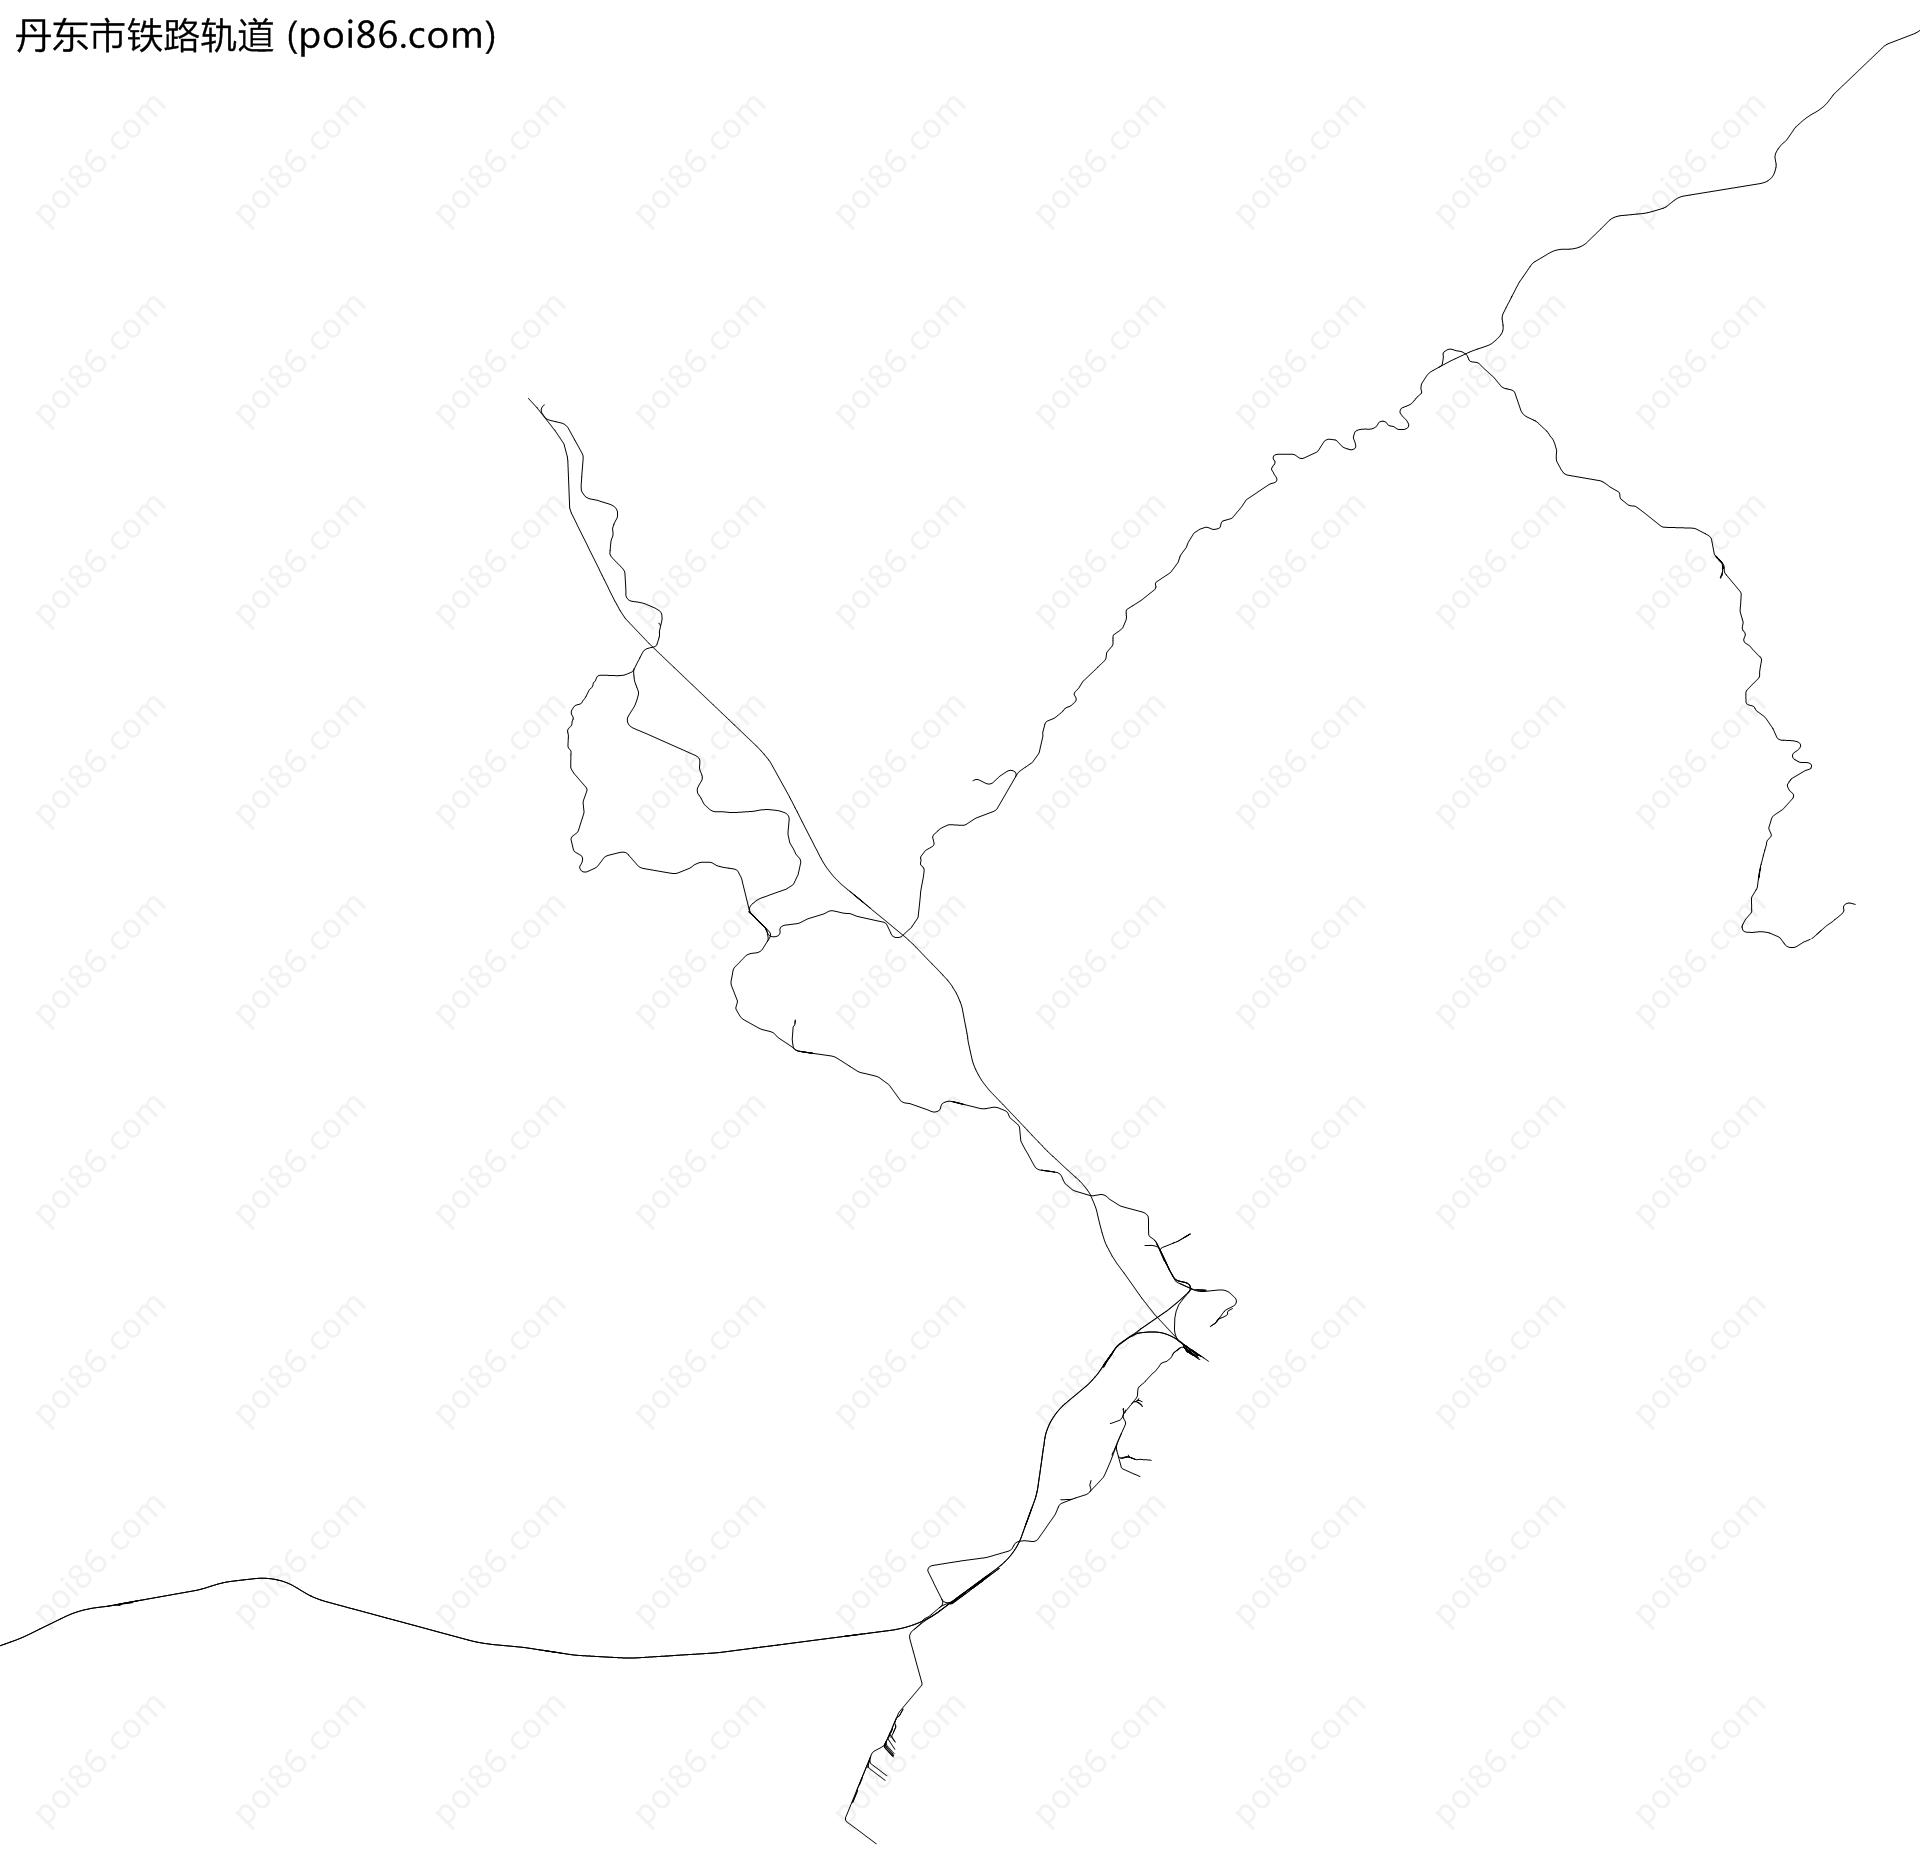 丹东市铁路轨道地图